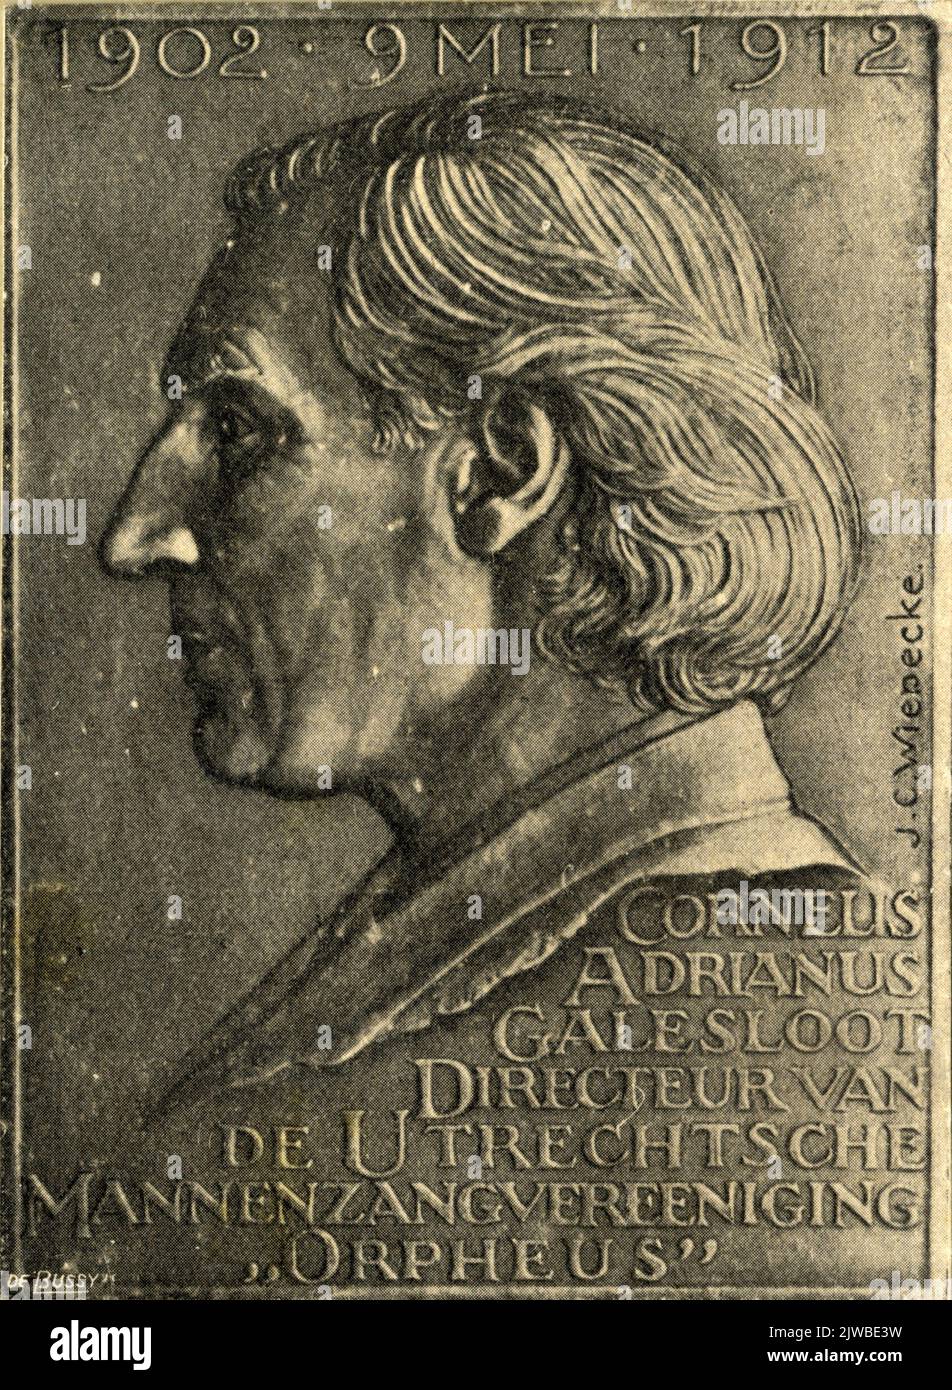 Porträt von A. (Abraham) van Veenendaal, genannt Bram de Mop, B. Utrecht, 18. April 1804, Utrecht Street Figure, d. 1890. Büste der Vorderseite. Stockfoto